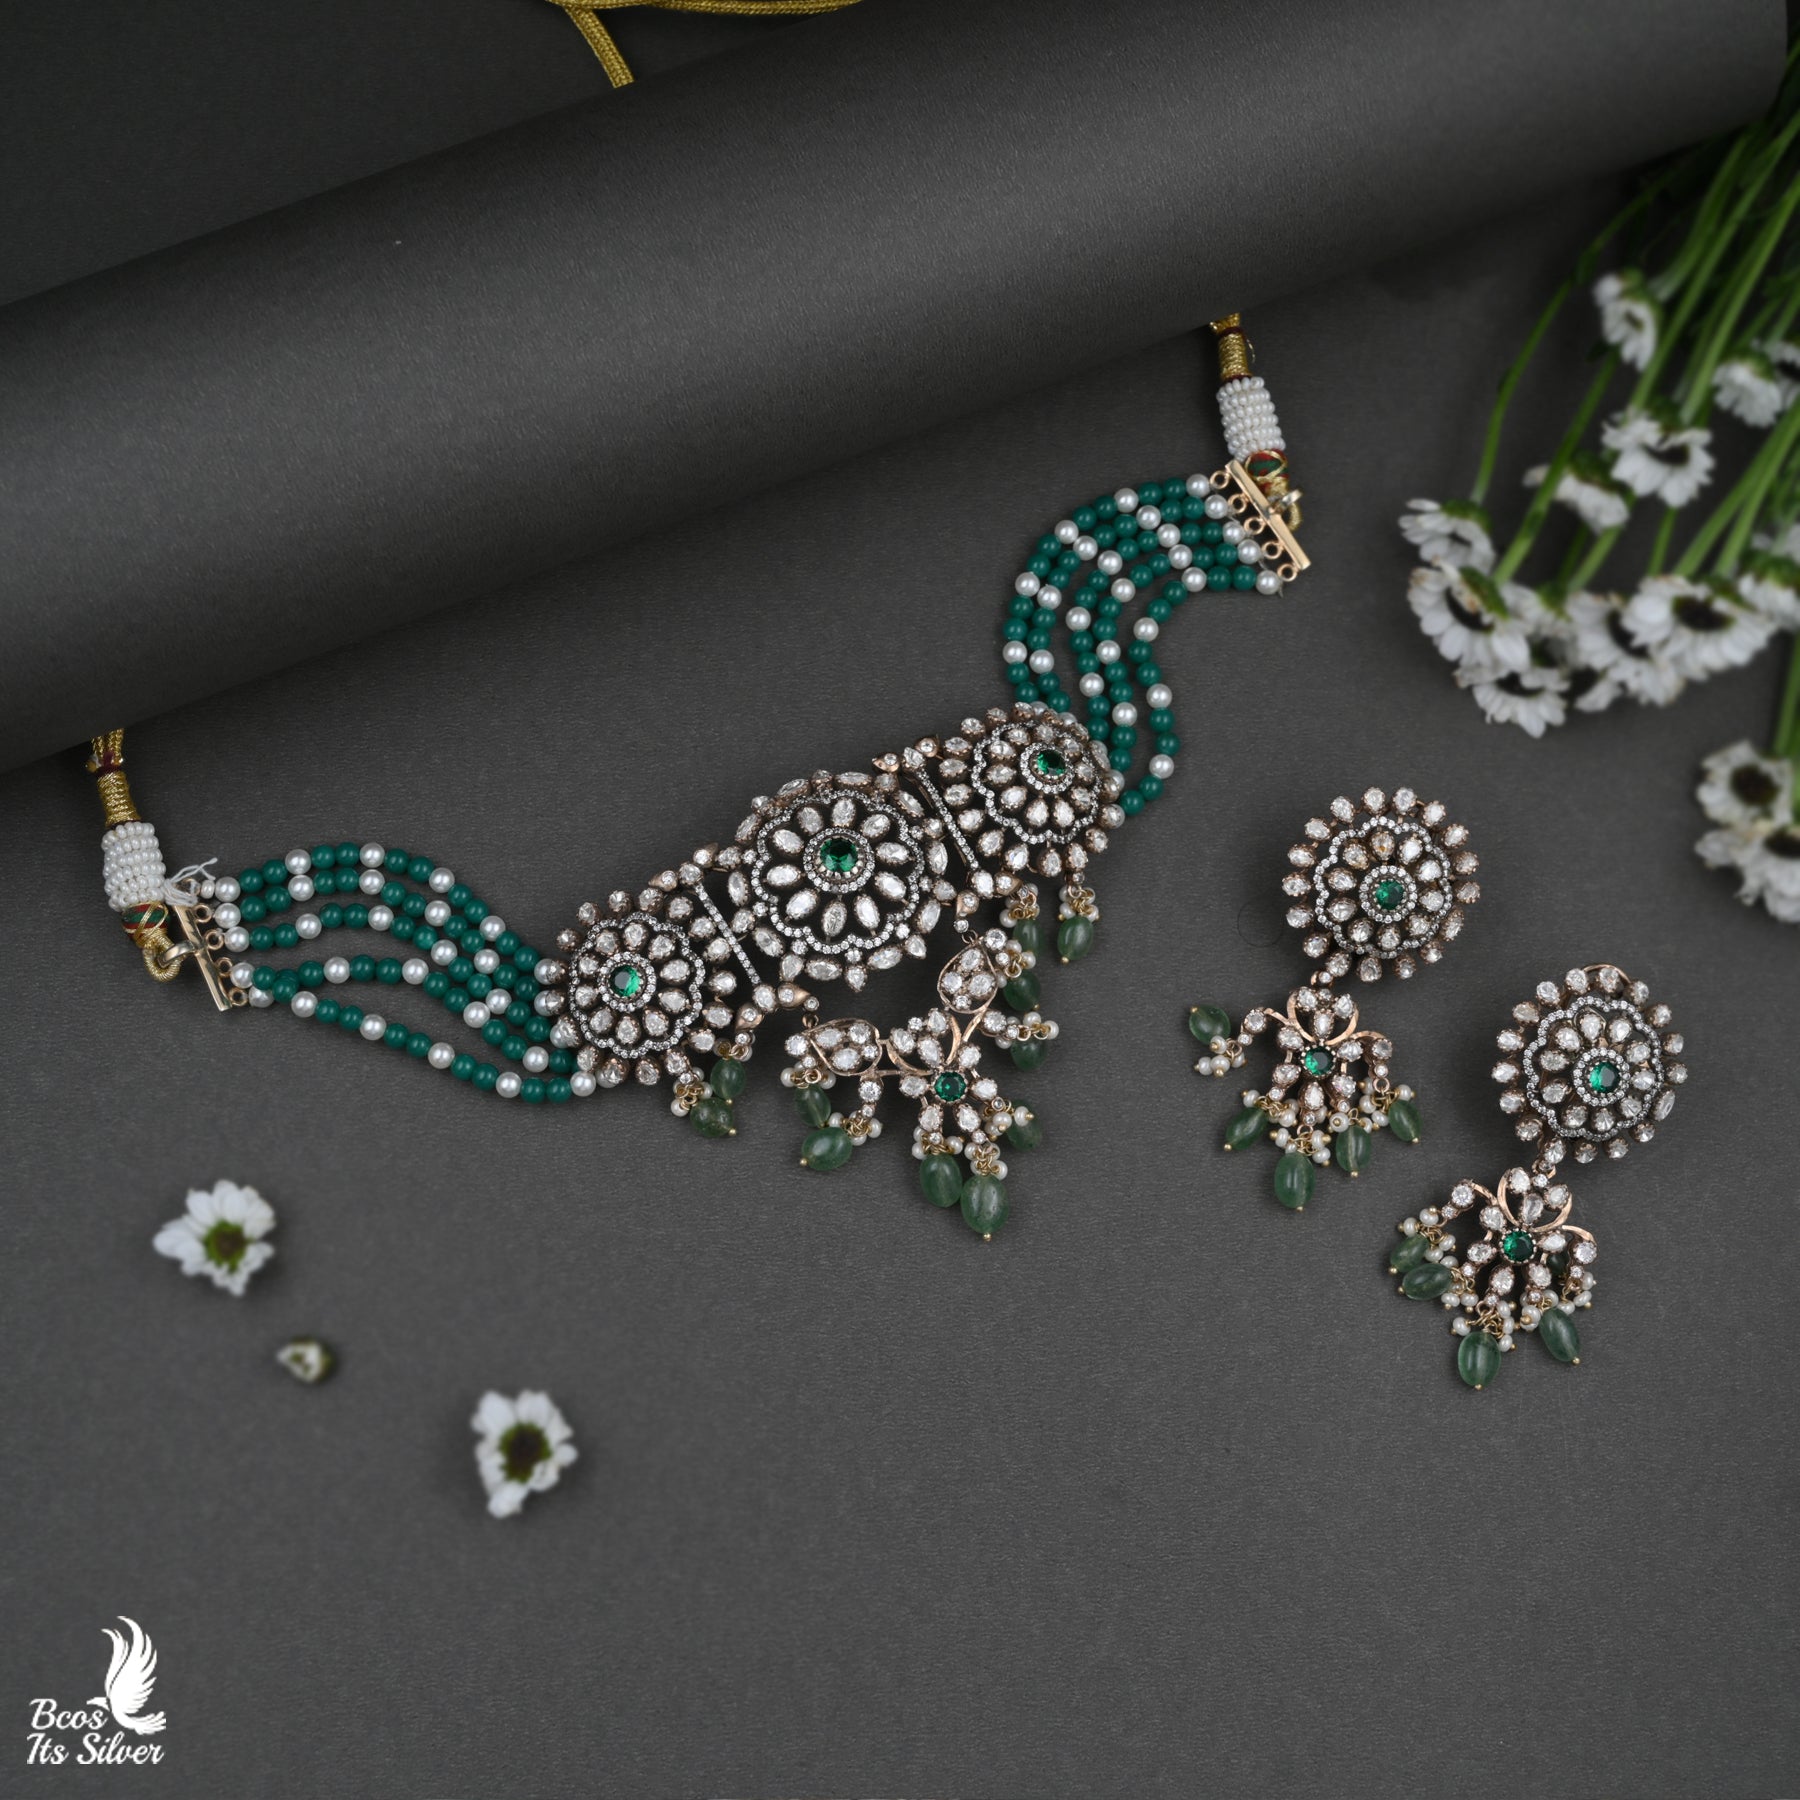 Victorian Beads Choker - 3985